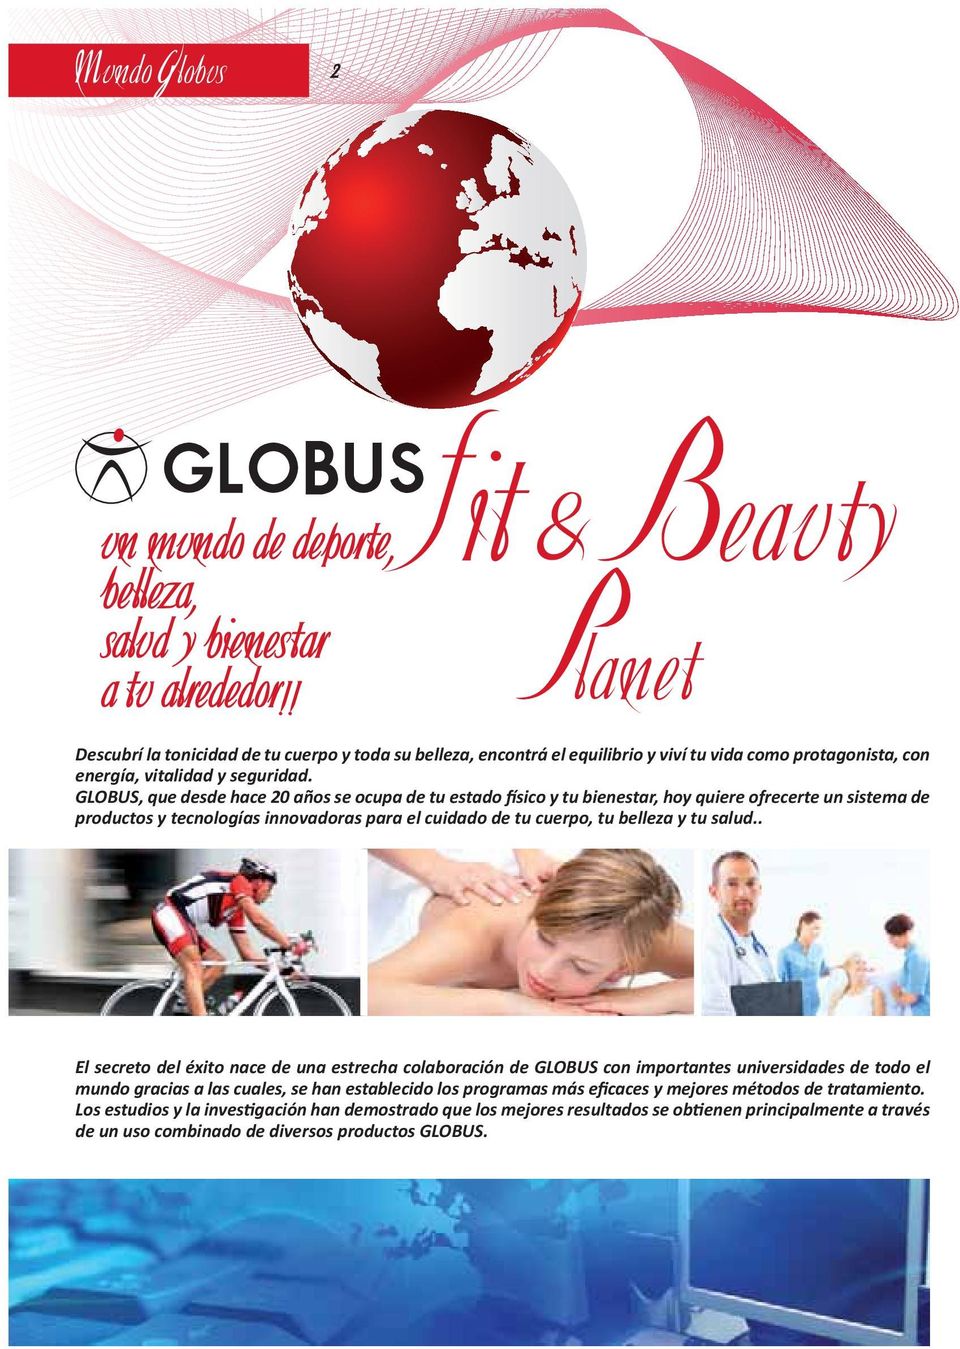 GLOBUS, que desde hace 20 años se ocupa de tu estado físico y tu bienestar, hoy quiere ofrecerte un sistema de productos y tecnologías innovadoras para el cuidado de tu cuerpo, tu belleza y tu